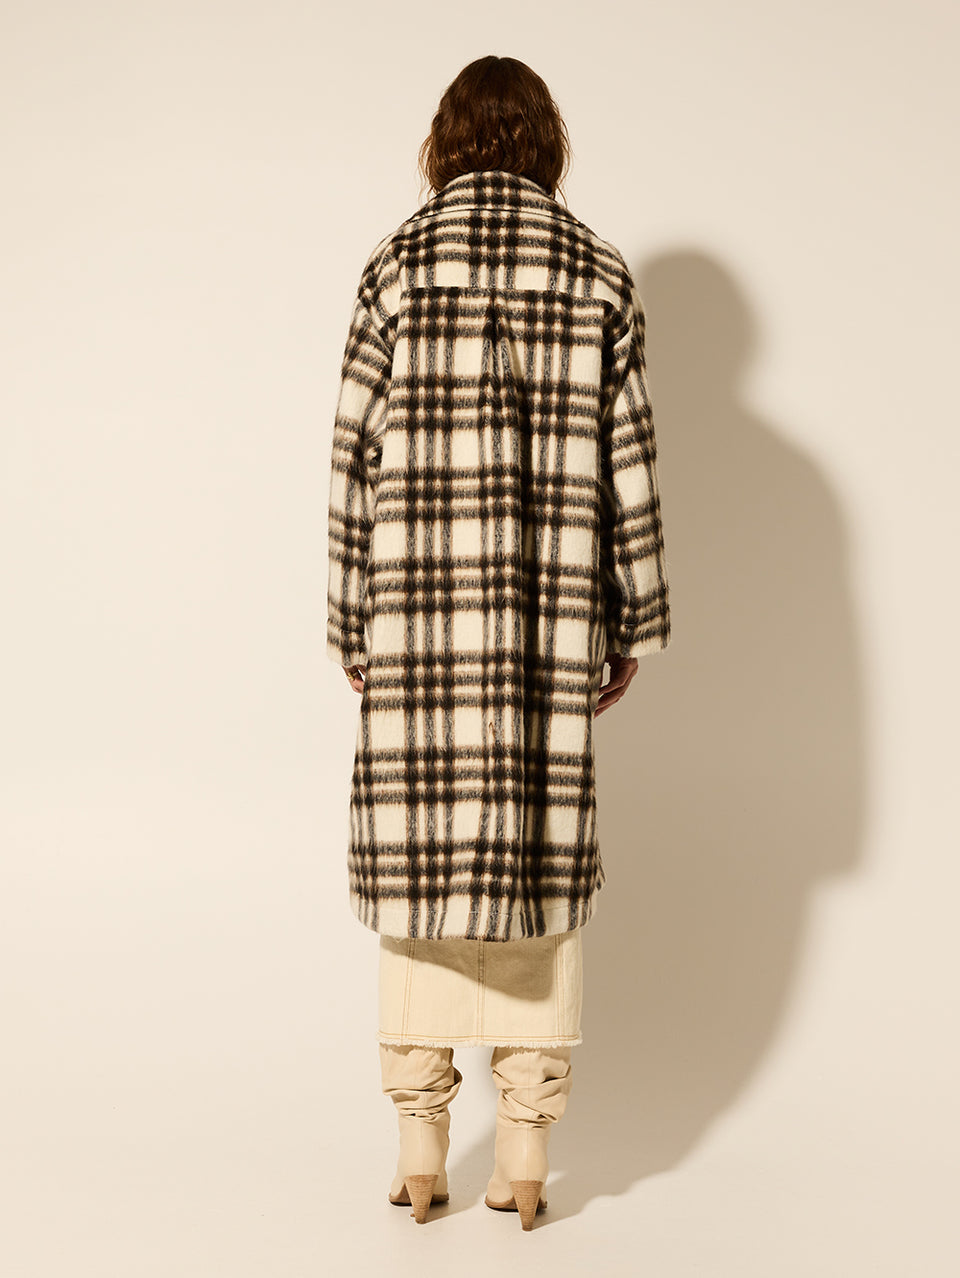 Kinley Coat KIVARI | Model wears brown check coat back view